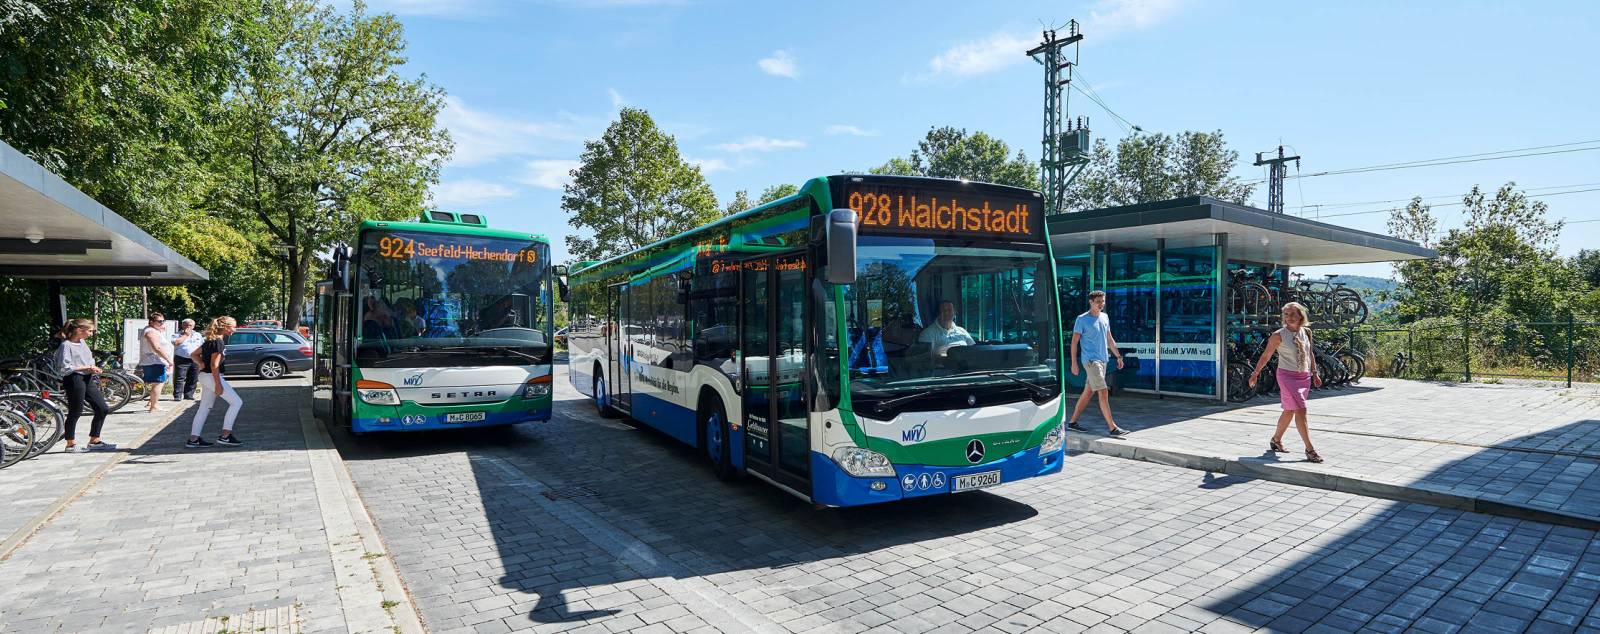 BusMATRIK – optimaler Anschluss auf Bus und Bahn